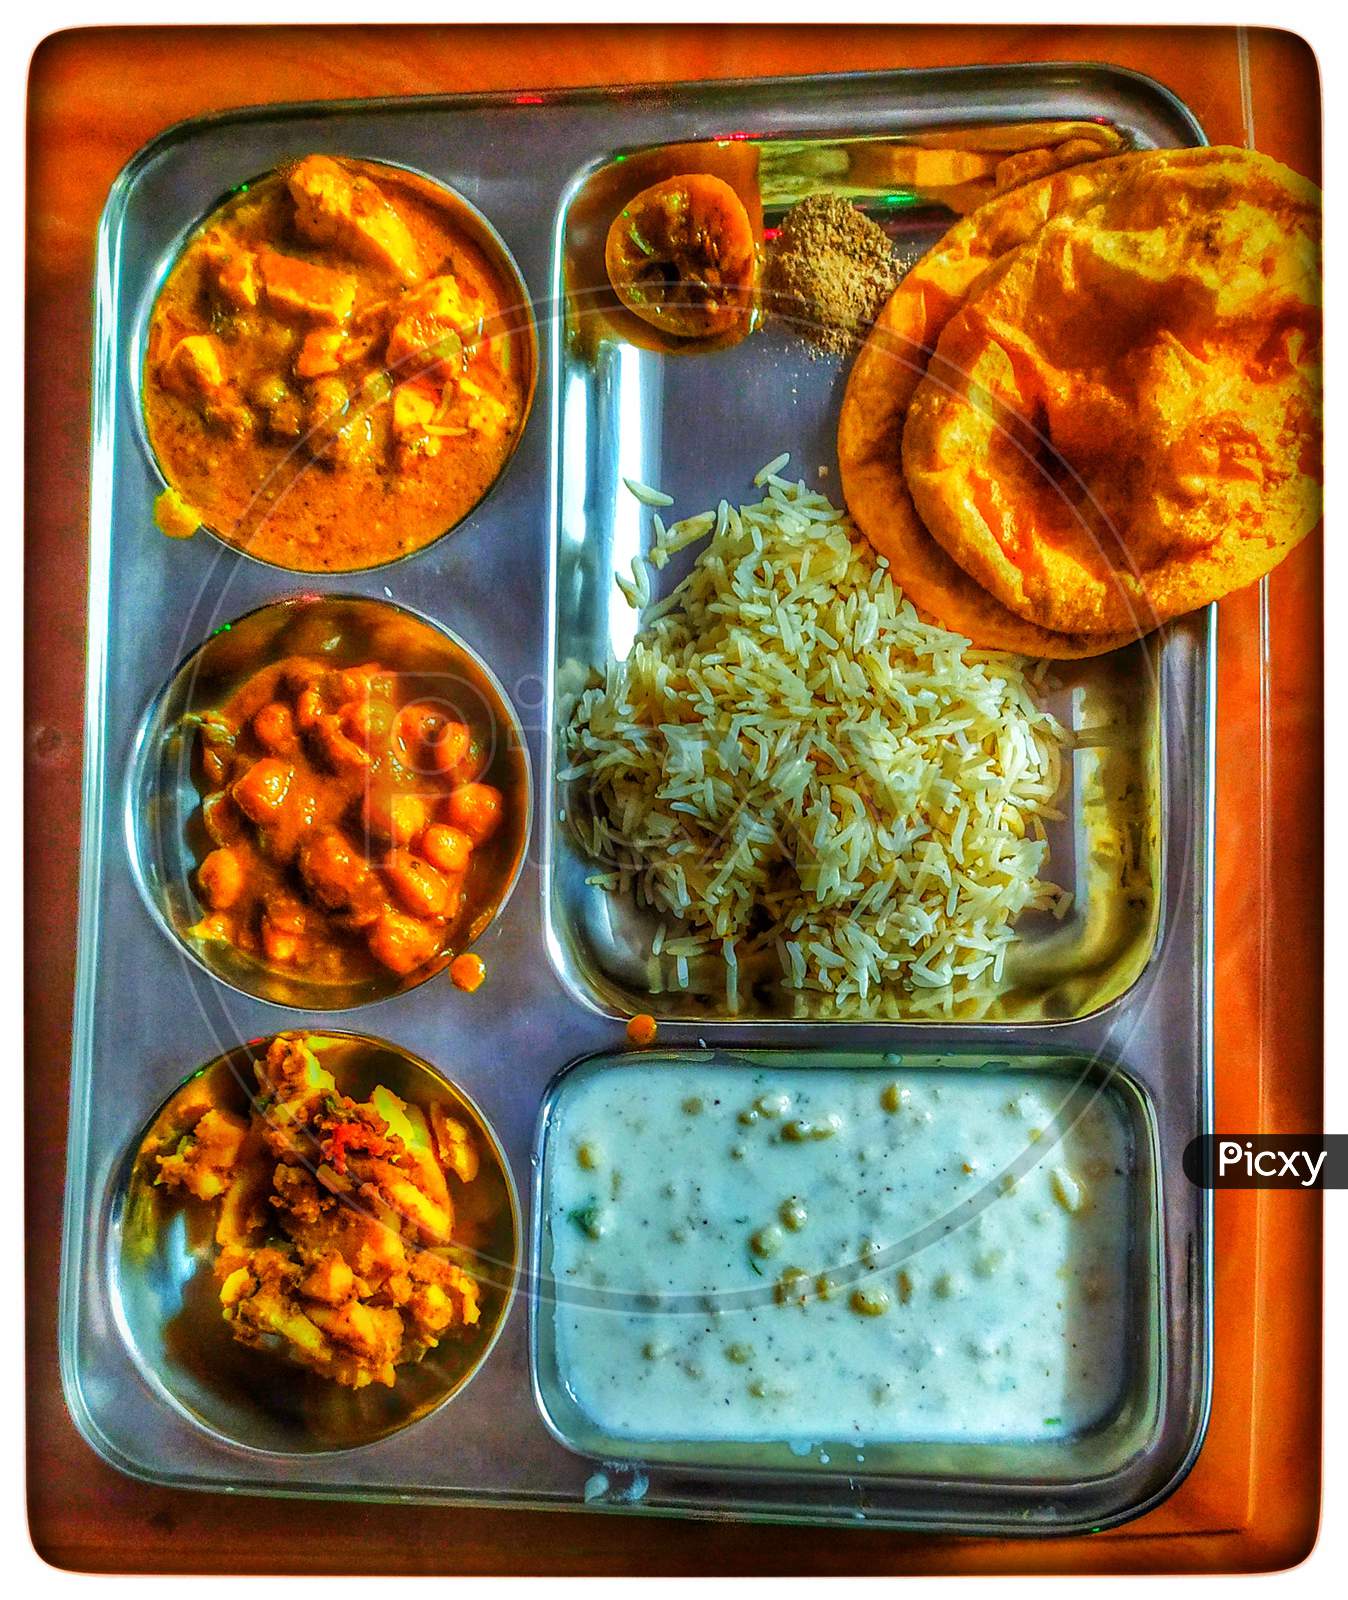 Hindustani Veg. Food / Comfort Food / Meal